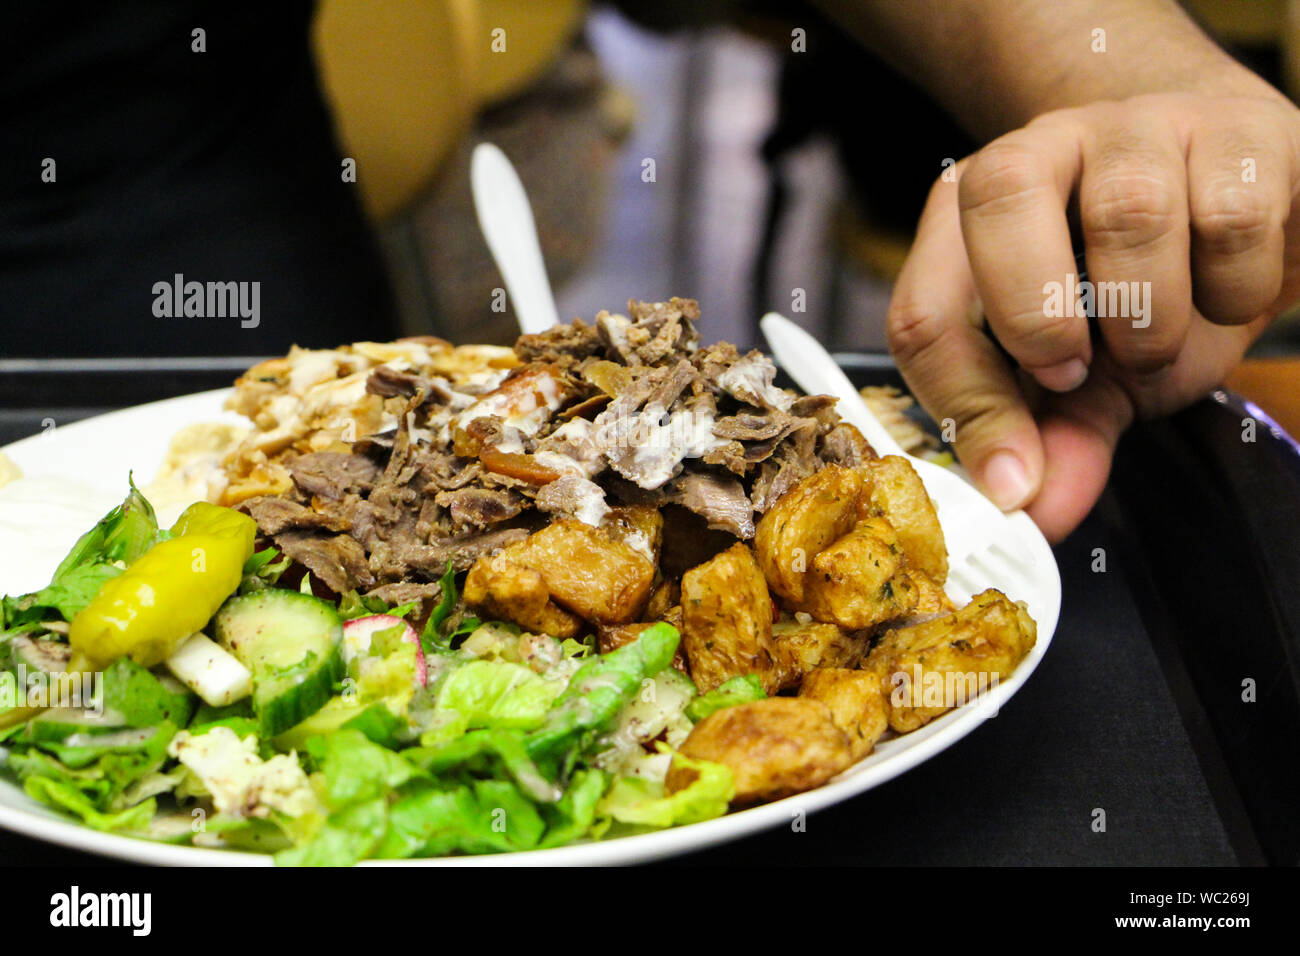 Serveur dans le restaurant apporte plat de nourriture sur la table Photo  Stock - Alamy